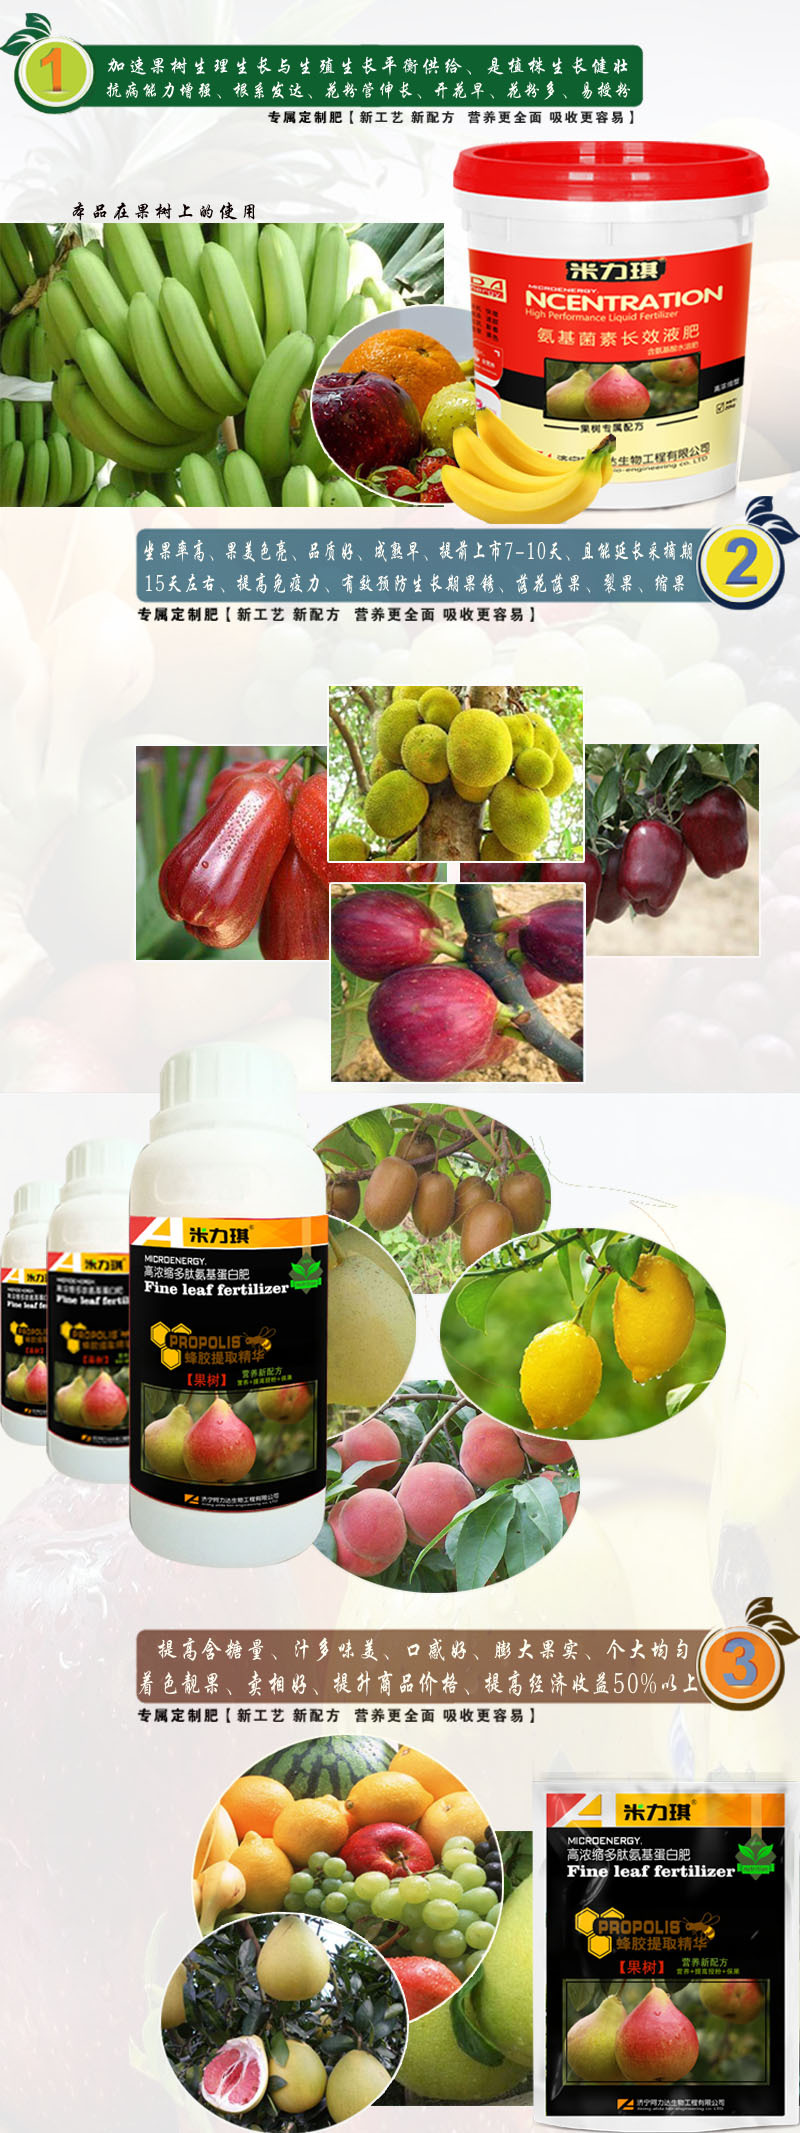 米力琪 果树专用肥 提高果实硬度 膨大增甜着色好 黄腐酸钾冲施肥示例图4